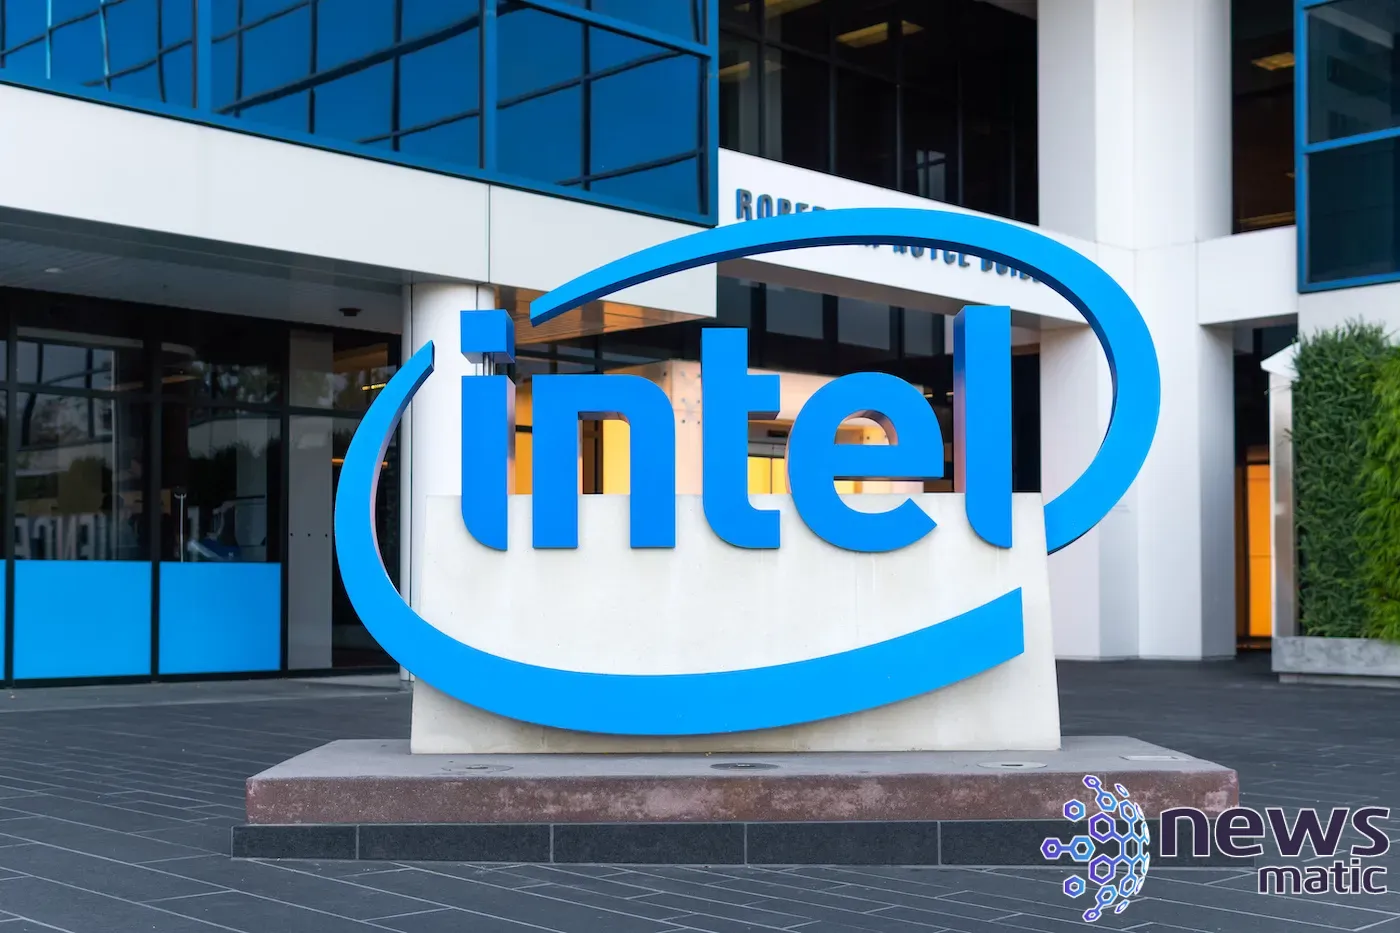 Revolución tecnológica: Intel lanza plataforma vPro con procesadores Core de 13ª generación - Software empresarial | Imagen 1 Newsmatic